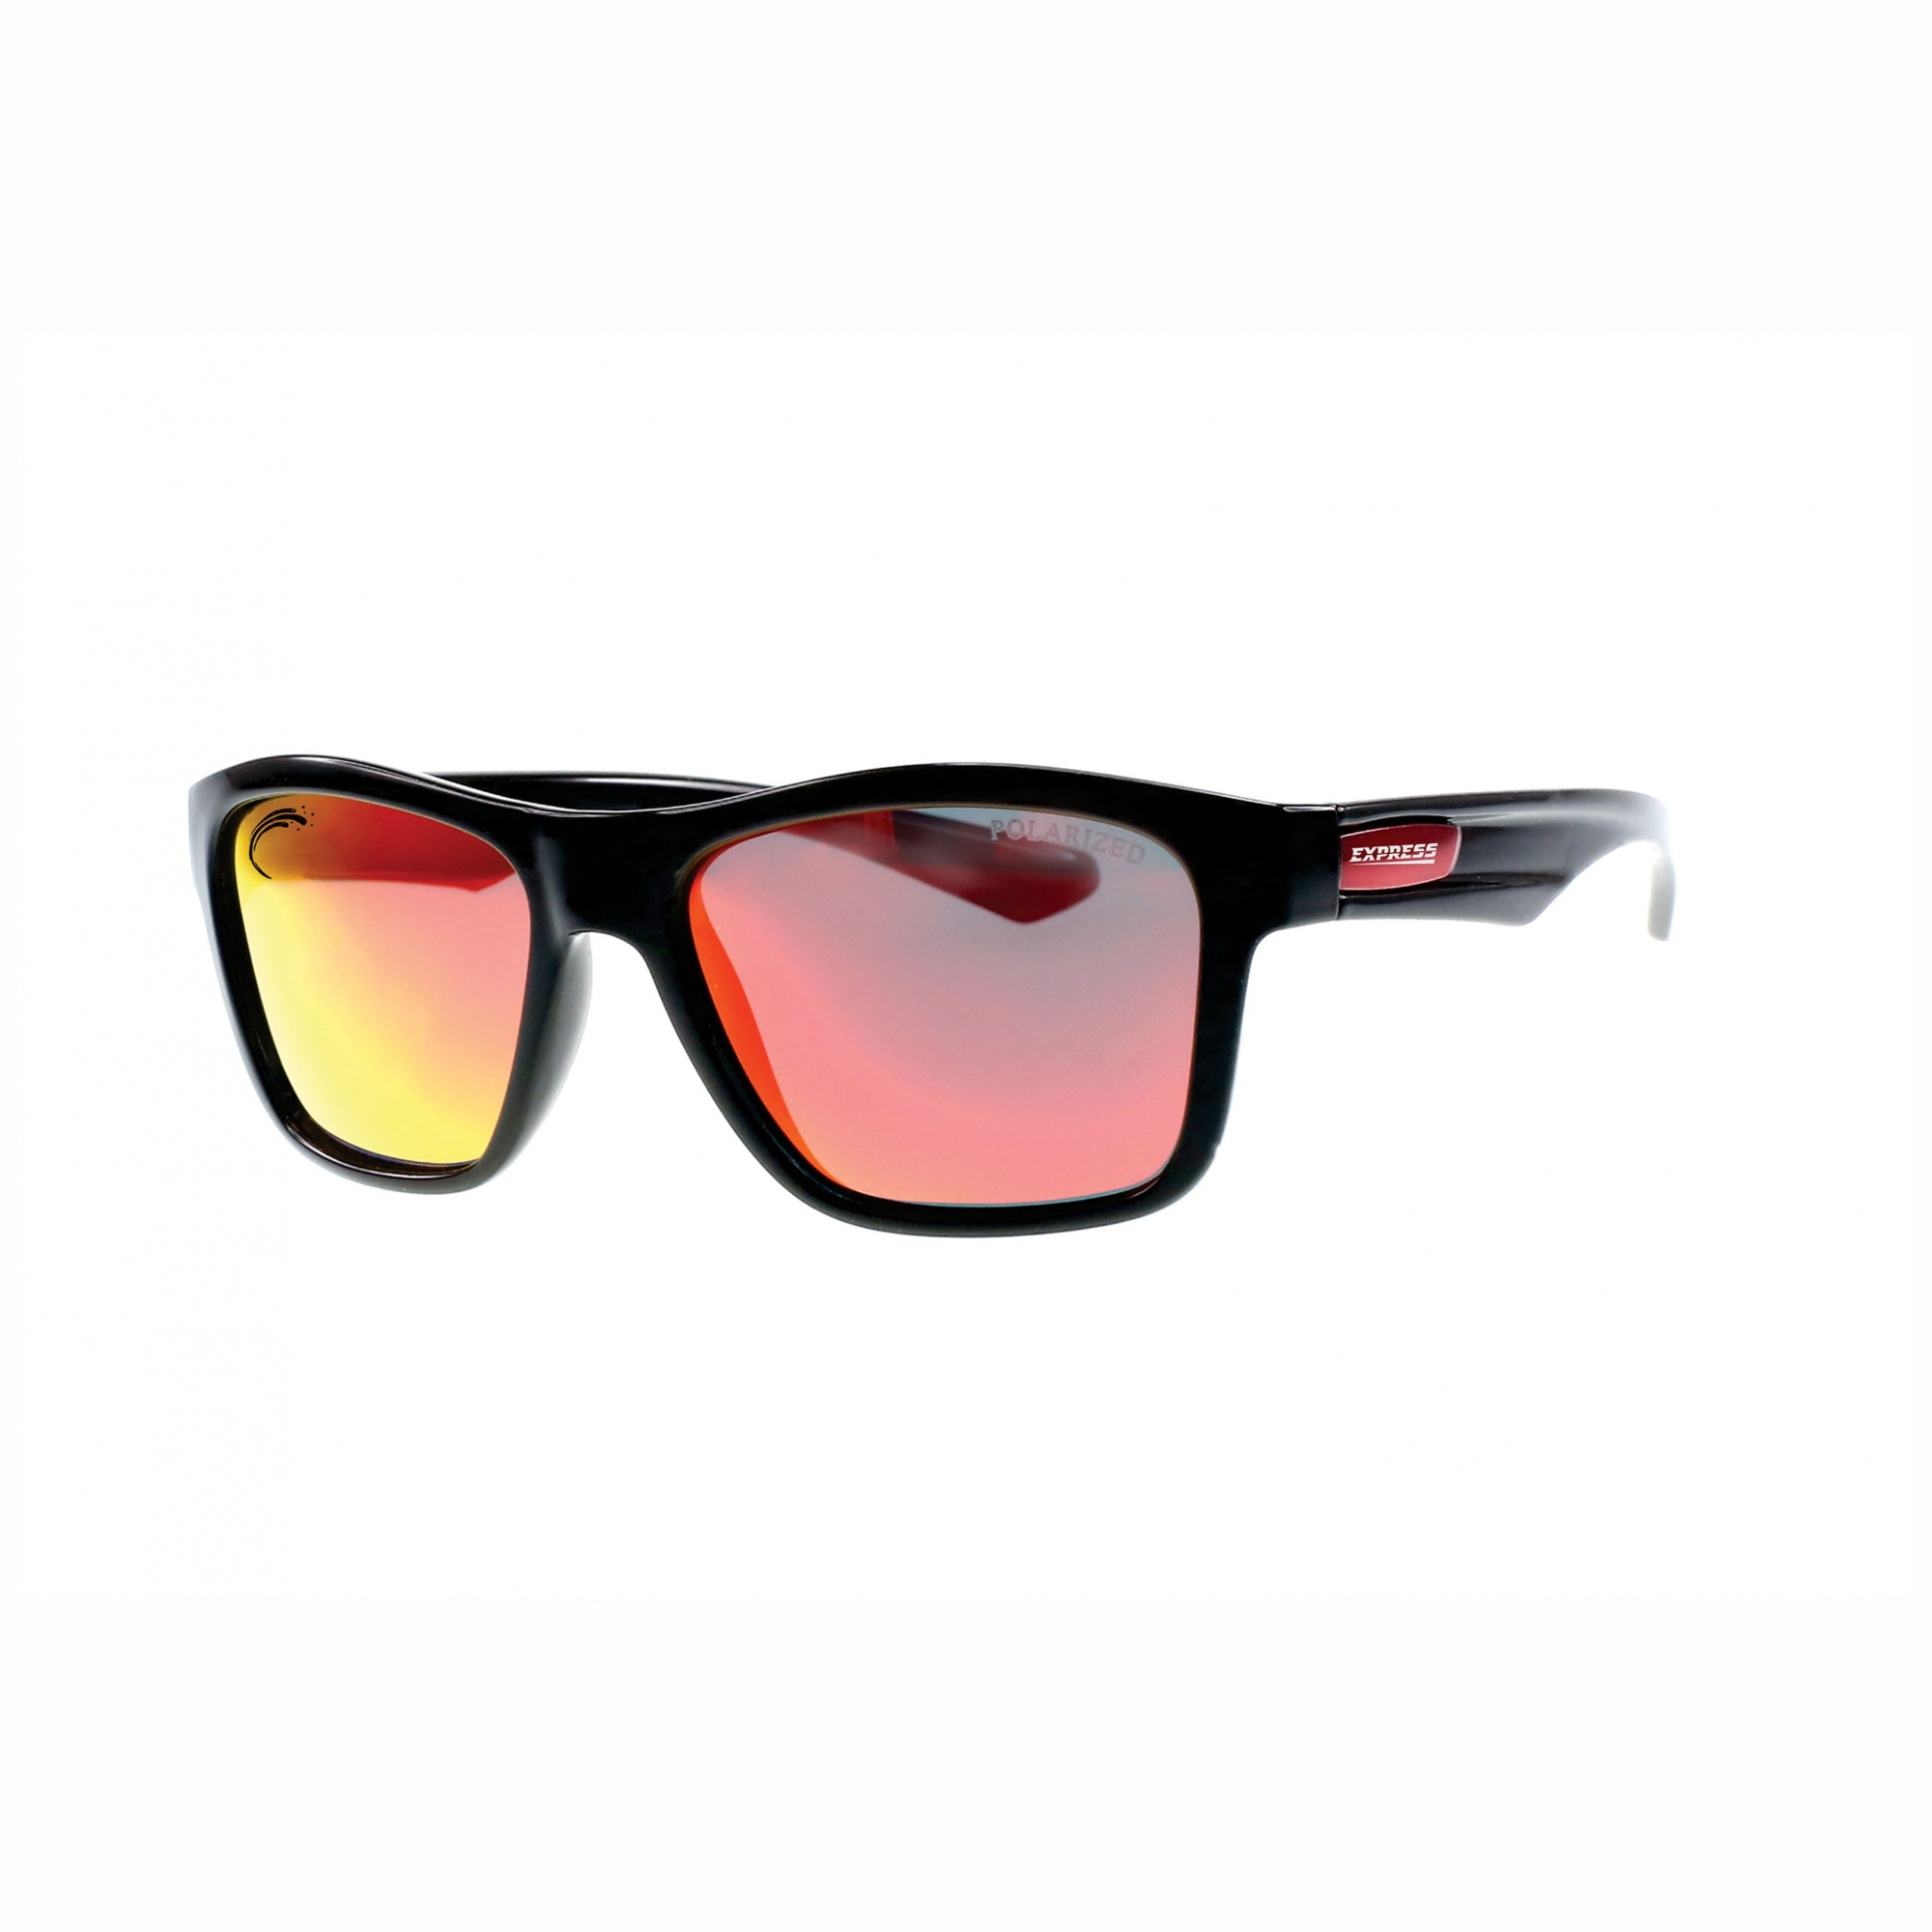 Óculos de Sol Polarizado Express Piranha Vermelho Espelhado